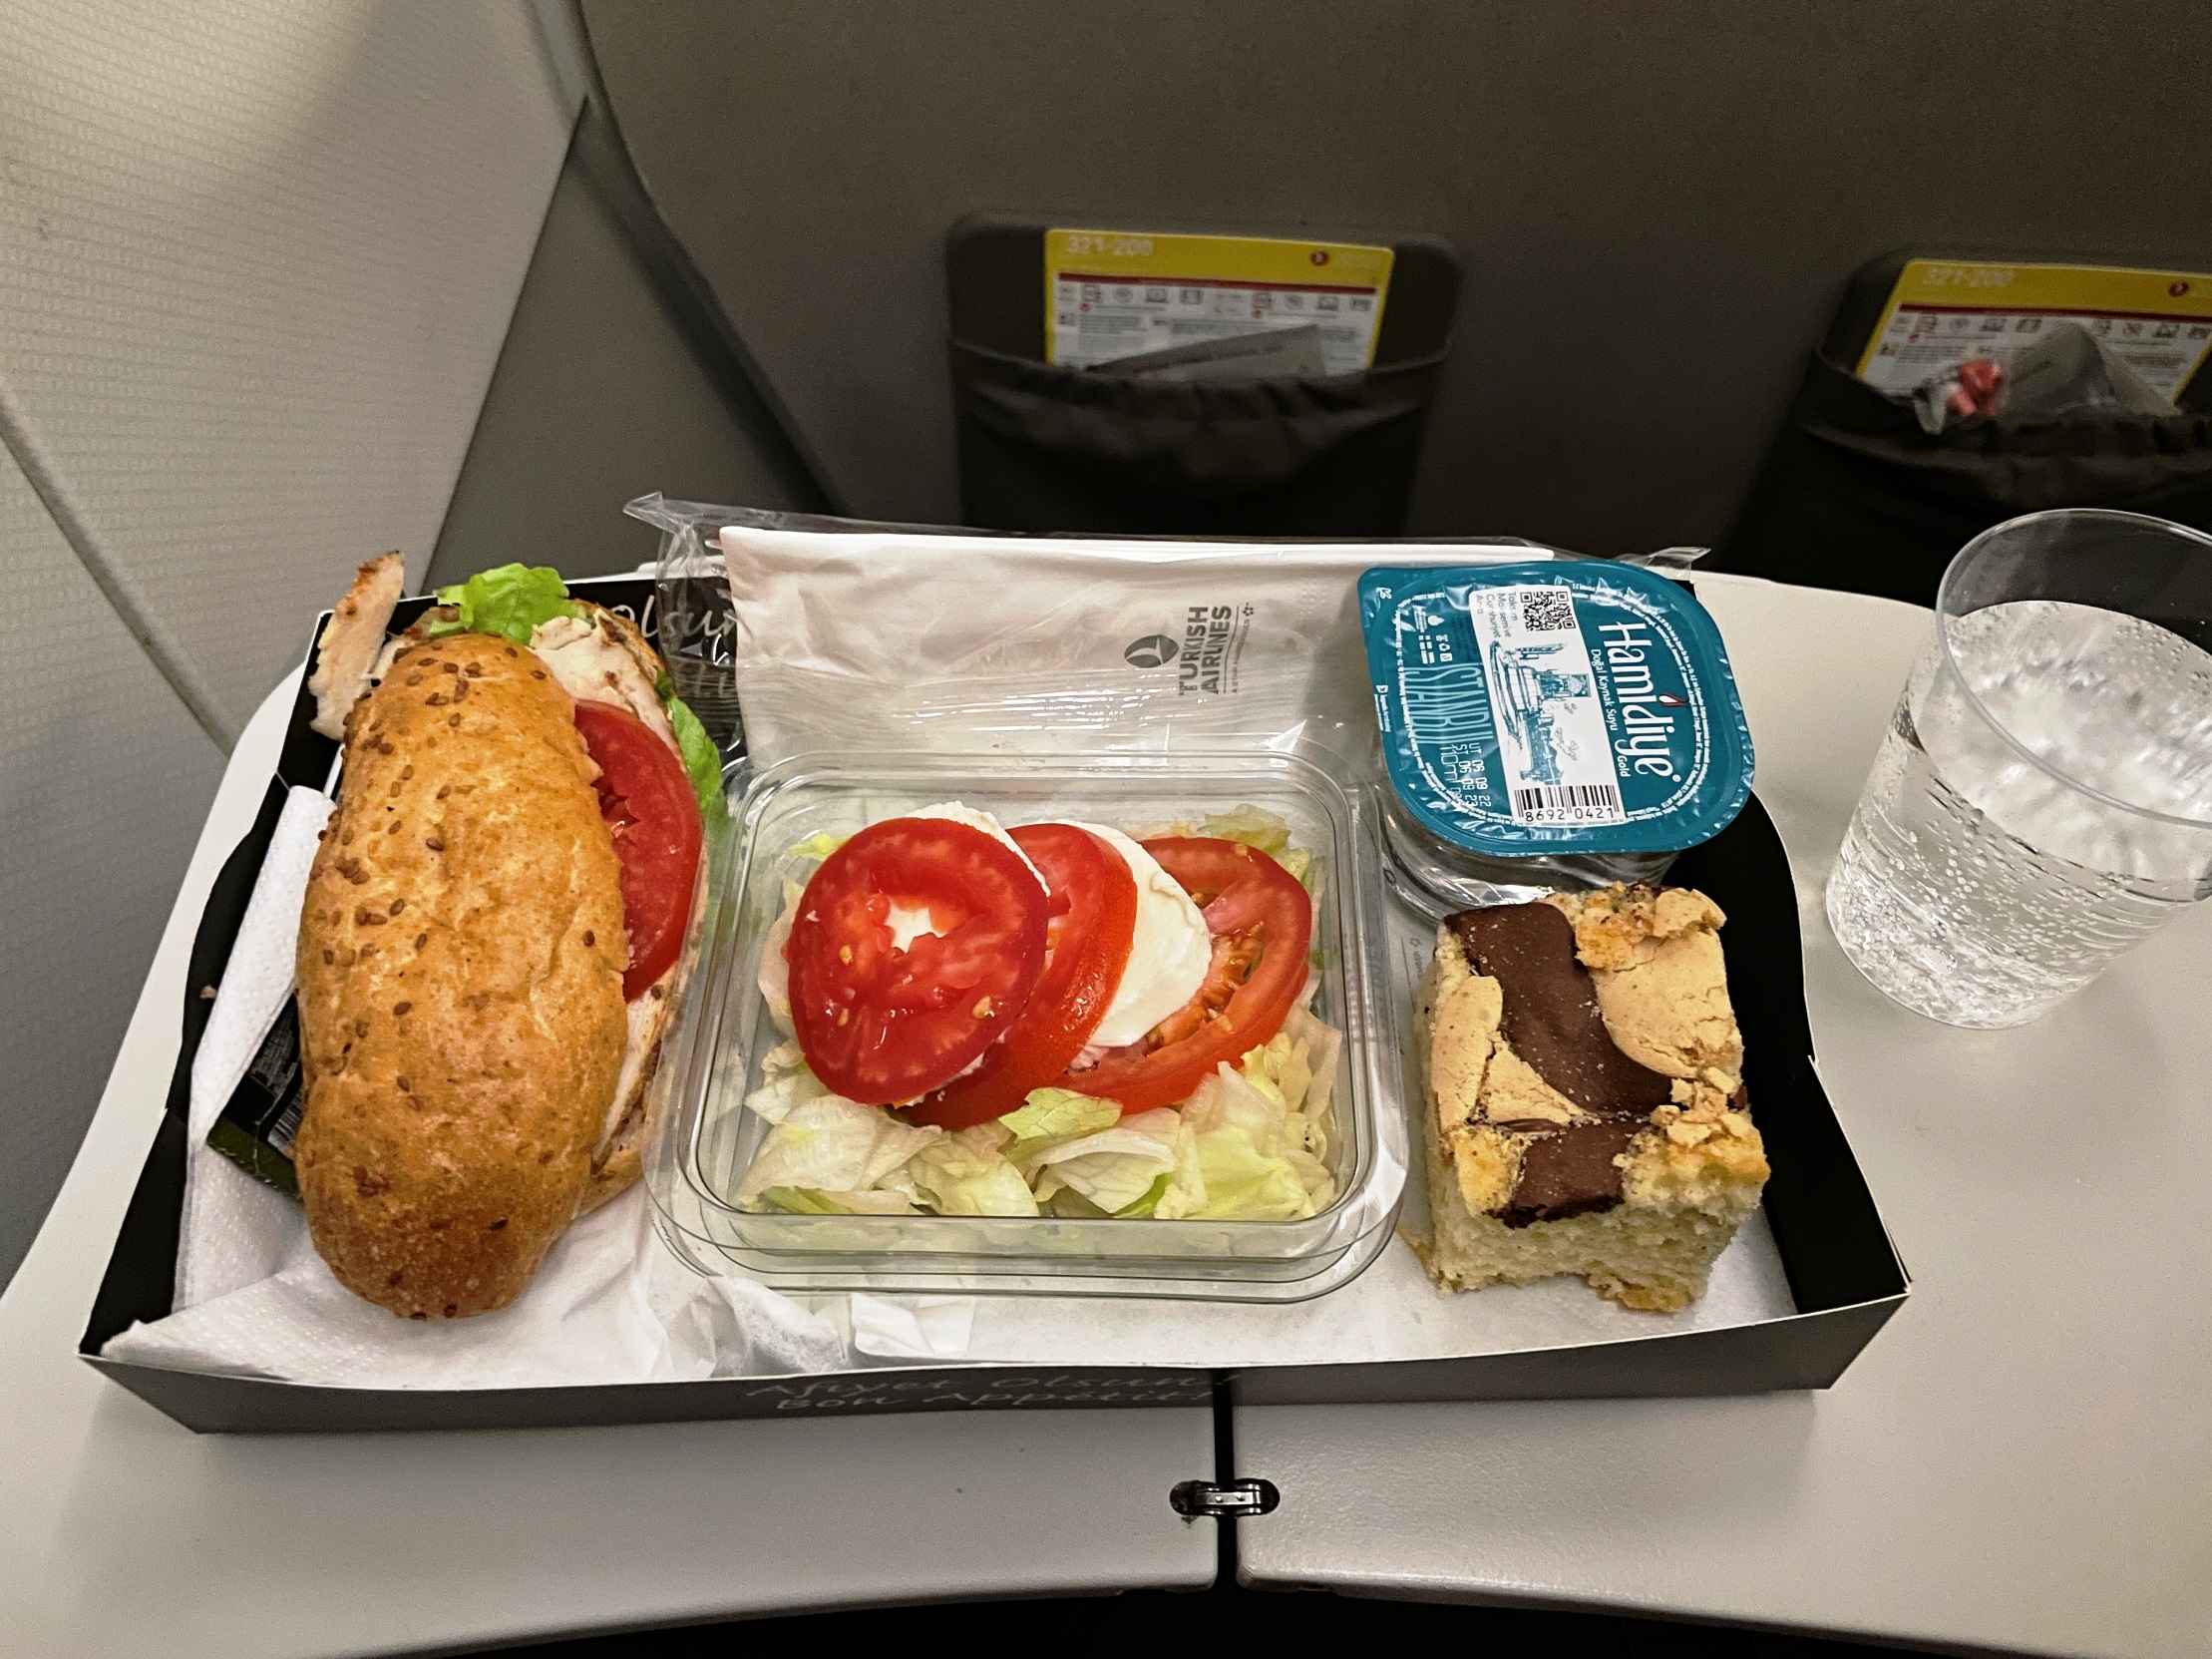 Türk Hava Yolları Economy Class Yemek İkramı (İstanbul – Üsküp)